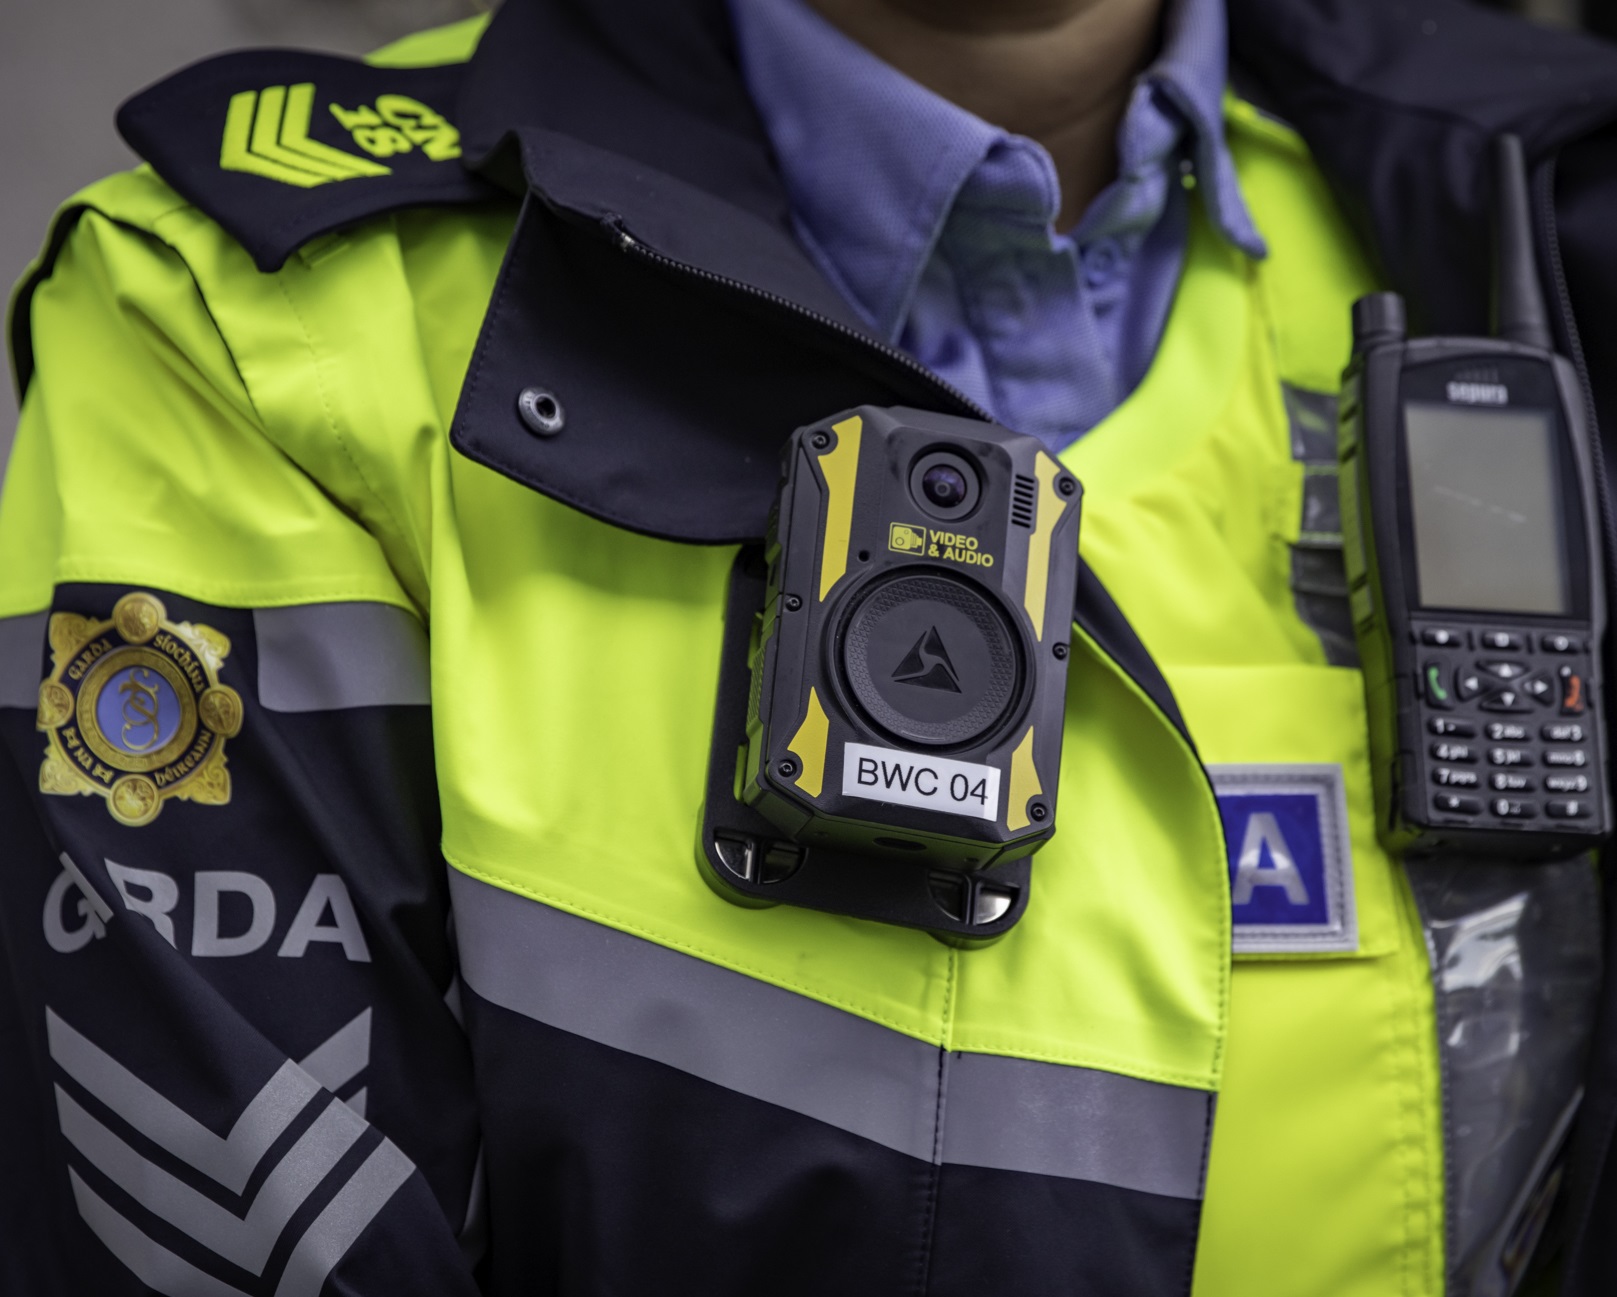 Garda officers wearing Body Worn Cameras.